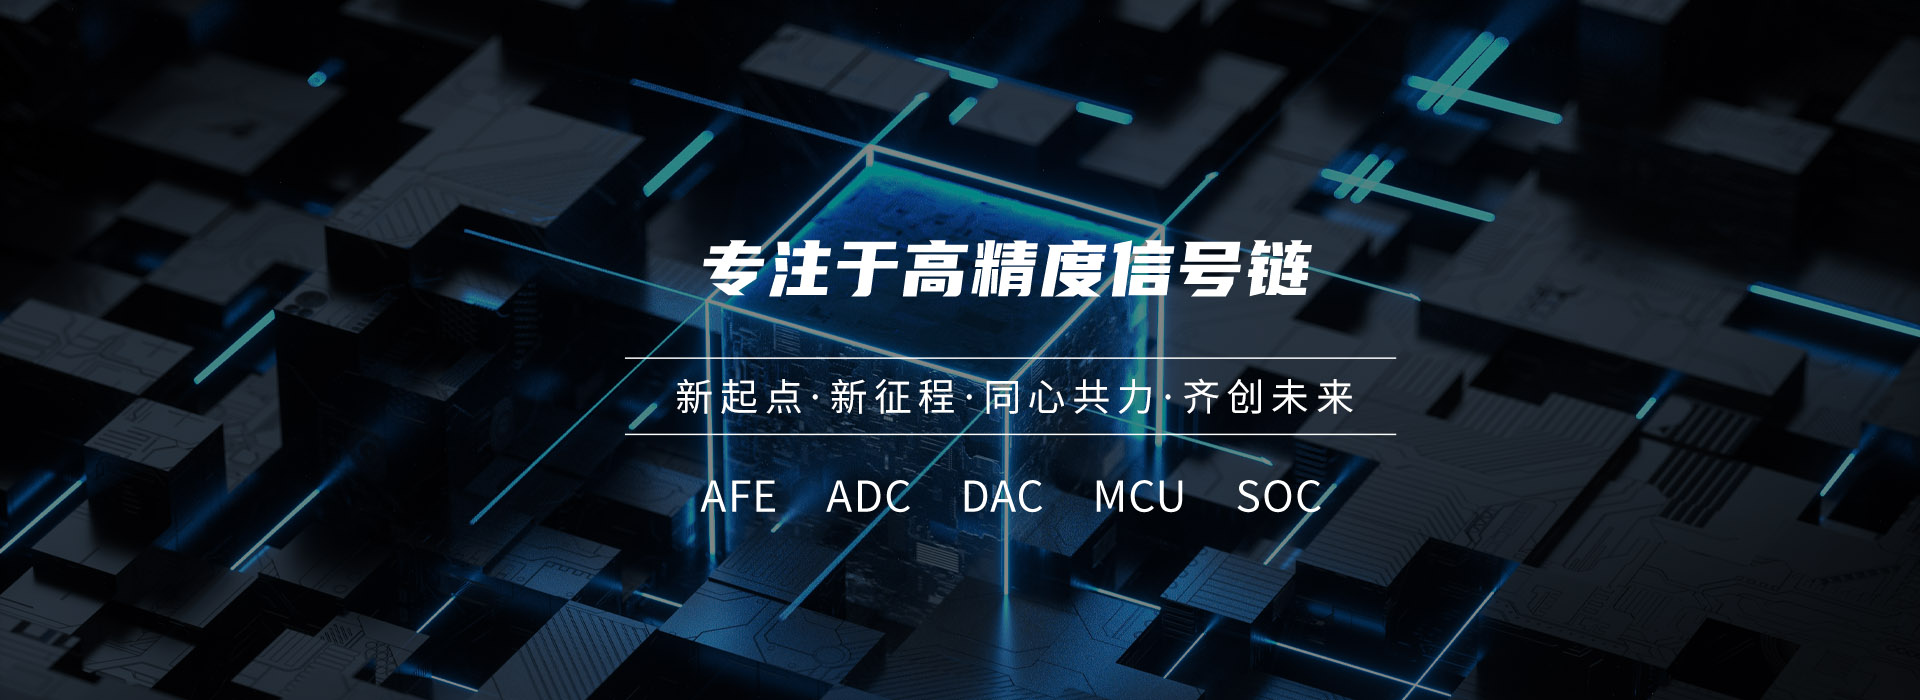 深圳和生微電子科技有限公司